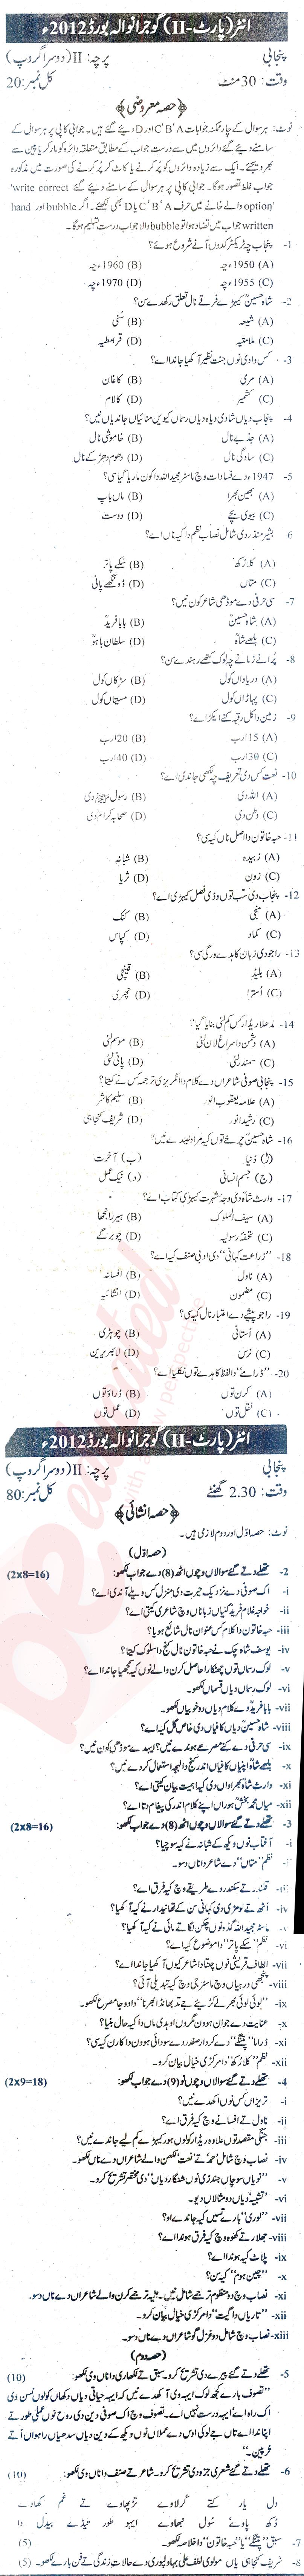 Punjabi FA Part 2 Past Paper Group 2 BISE Gujranwala 2012